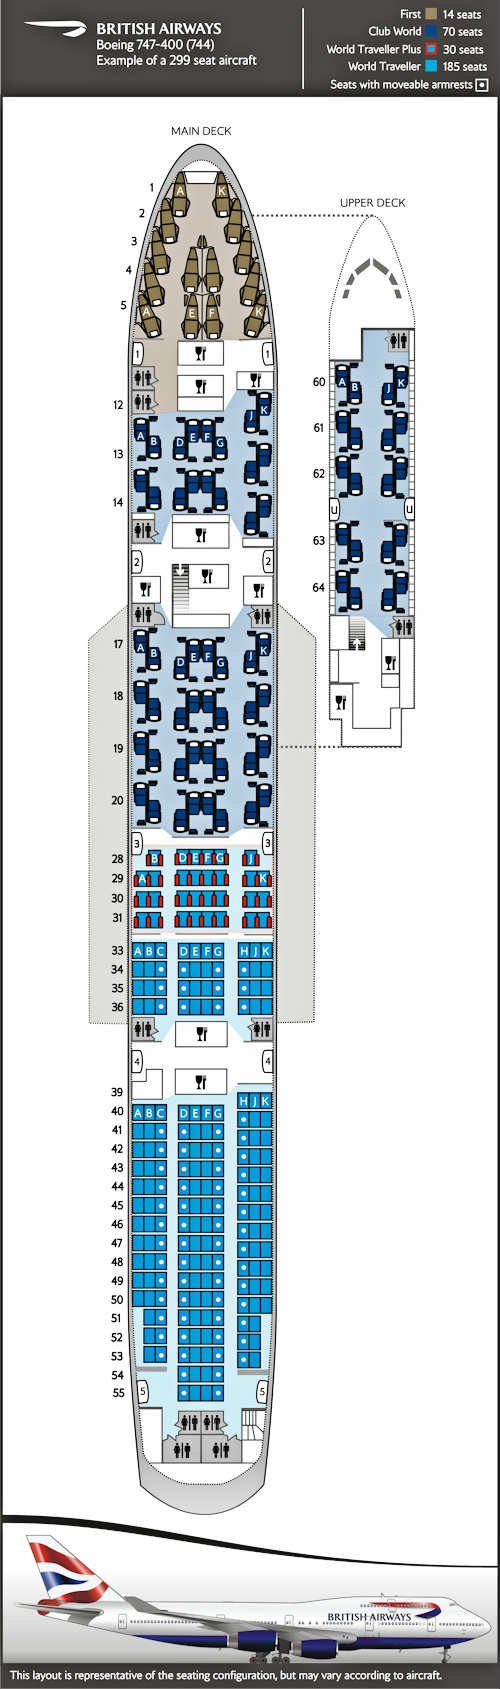 Configurazione dei posti del Boeing 747-400, configurazione da 299 posti per 4 classi.